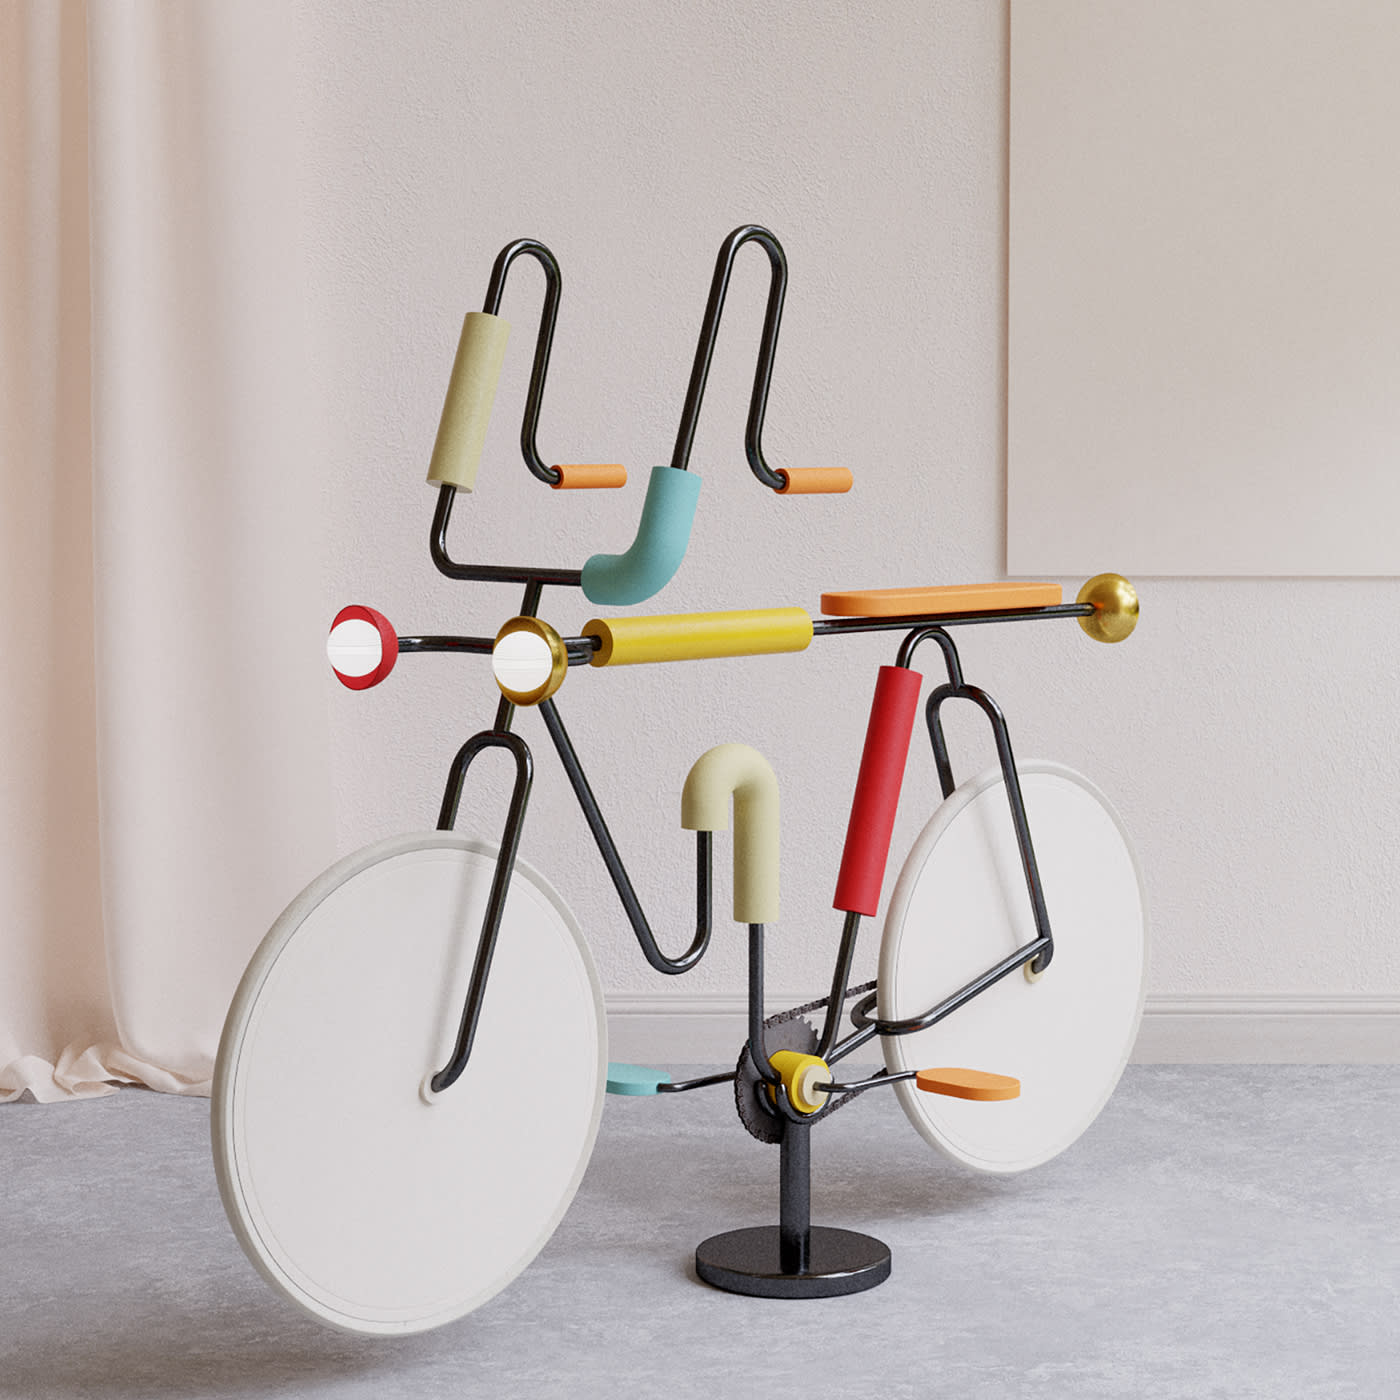 Morse Bike Sculpture - Le Dictateur